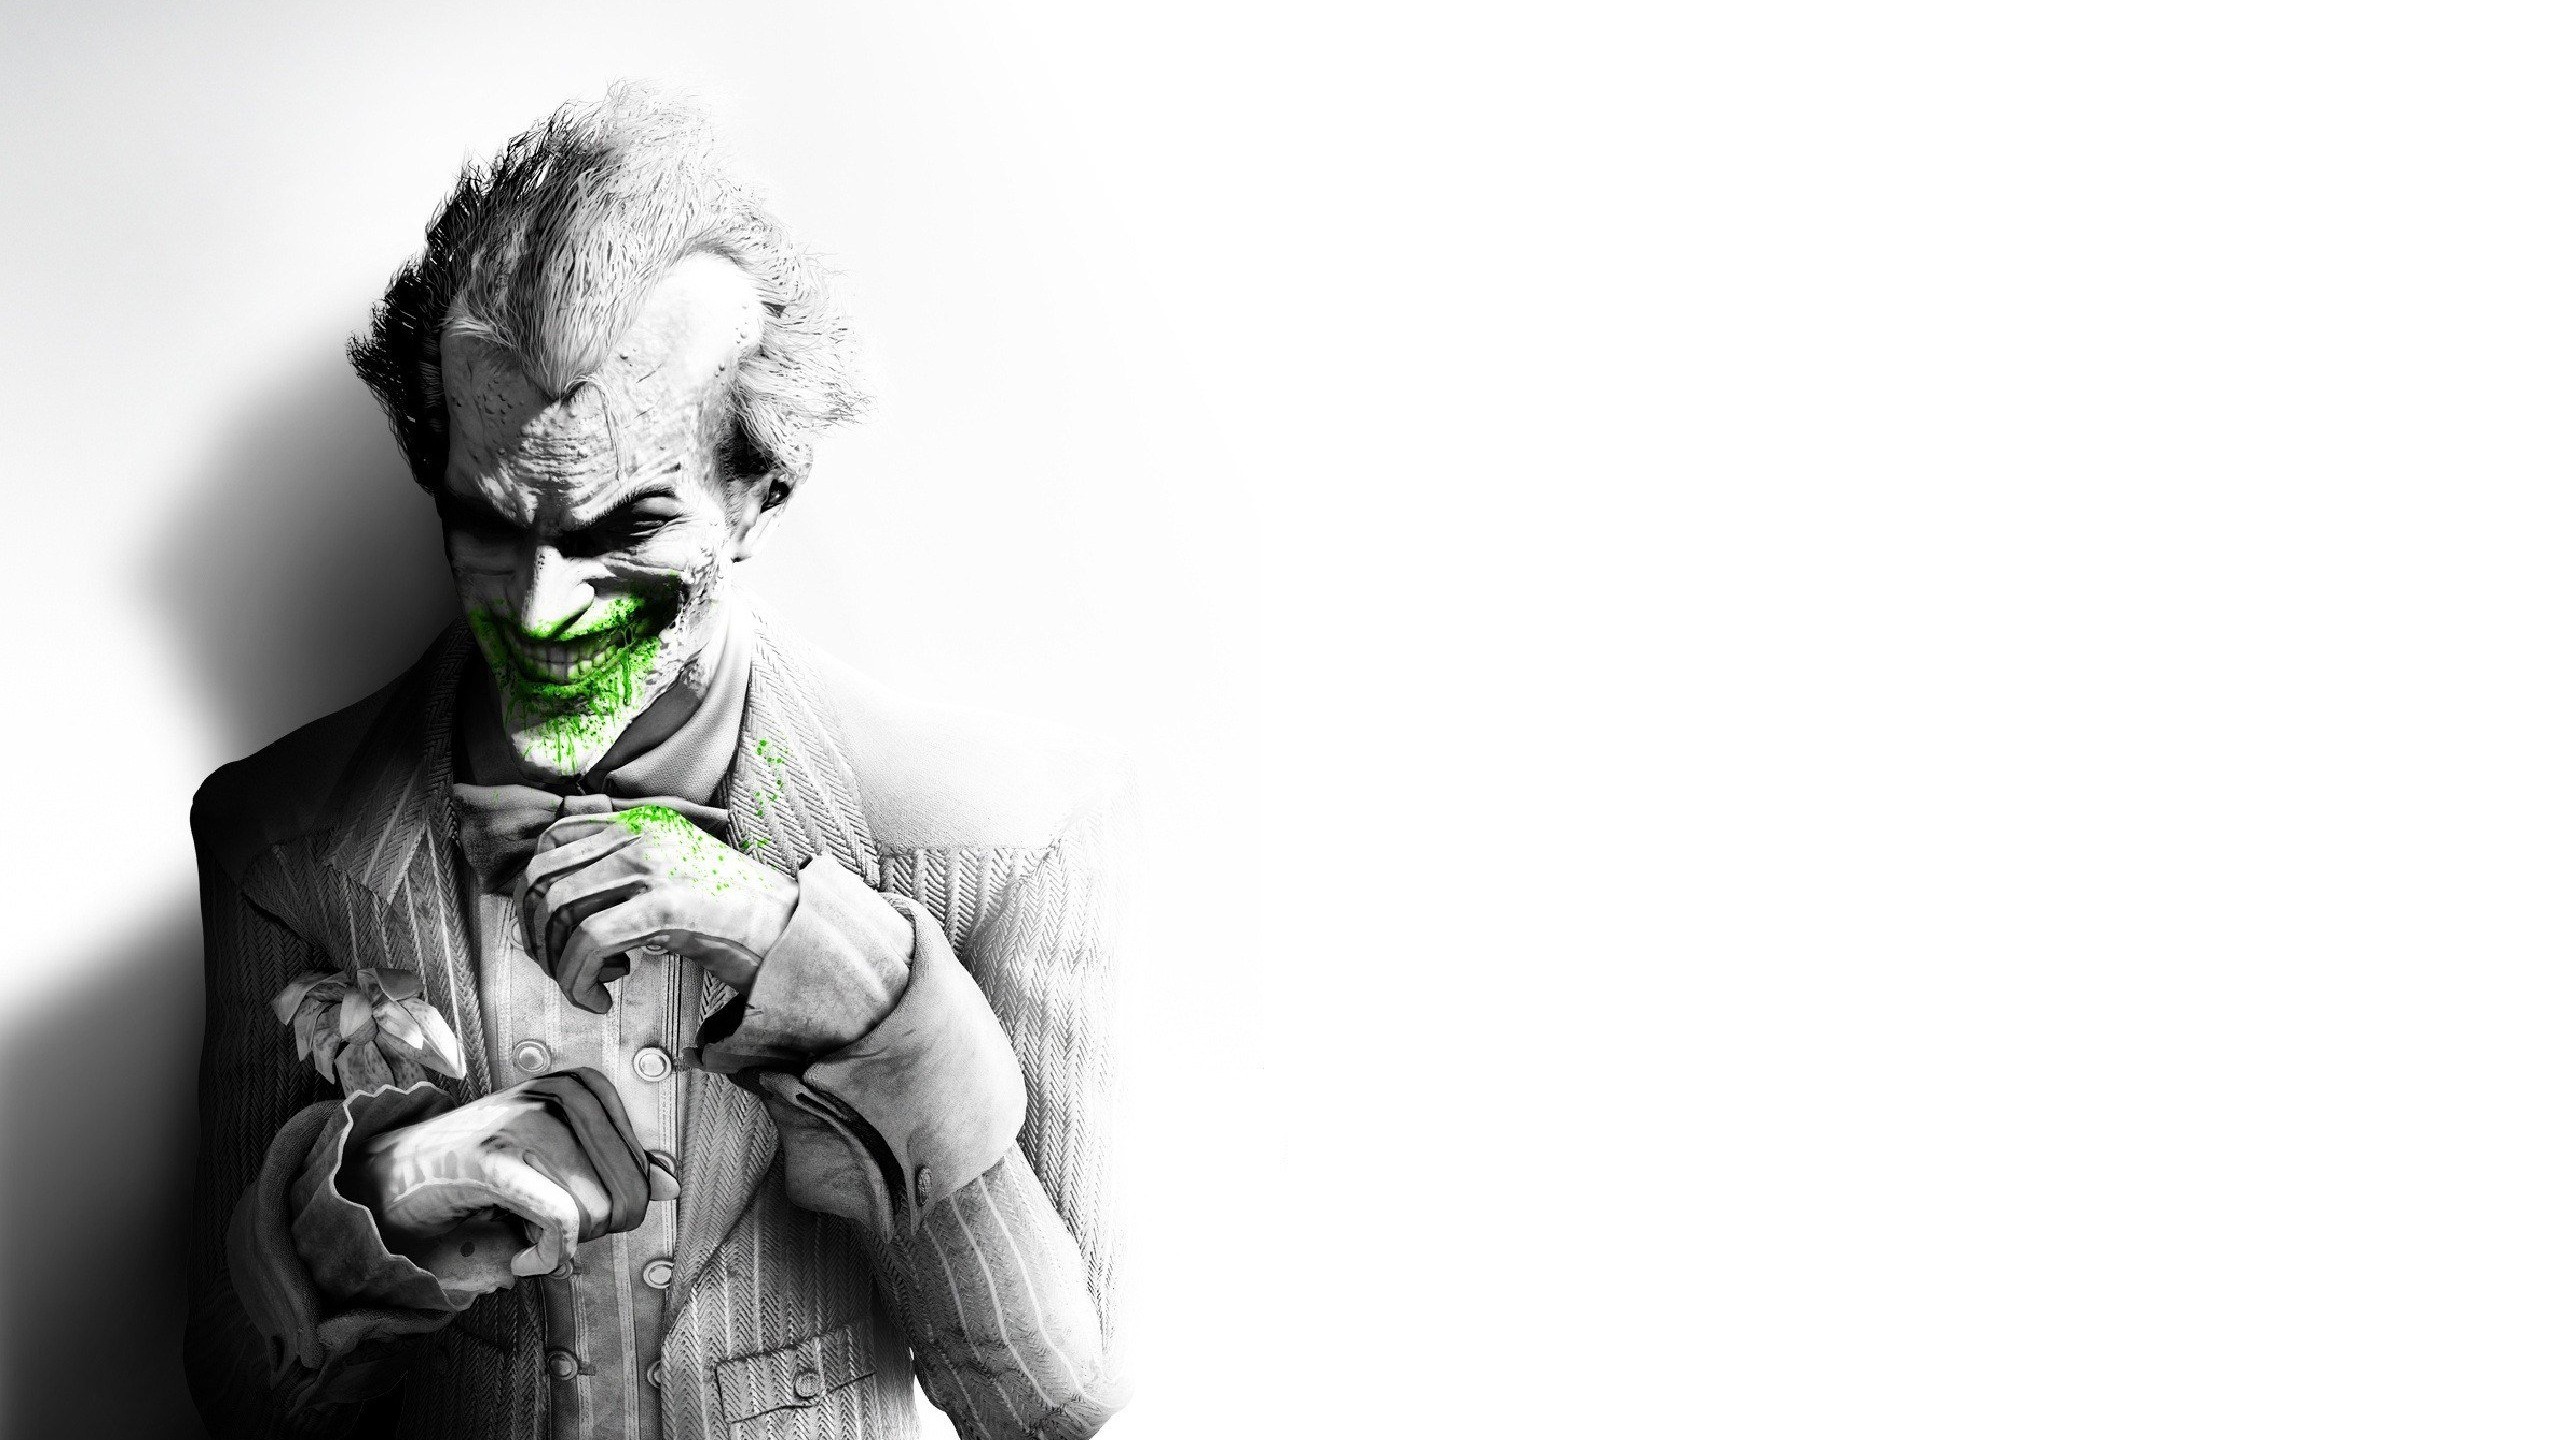 The Joker, Batman Arkham City Wallpaper for Social Media YouTube Channel Art